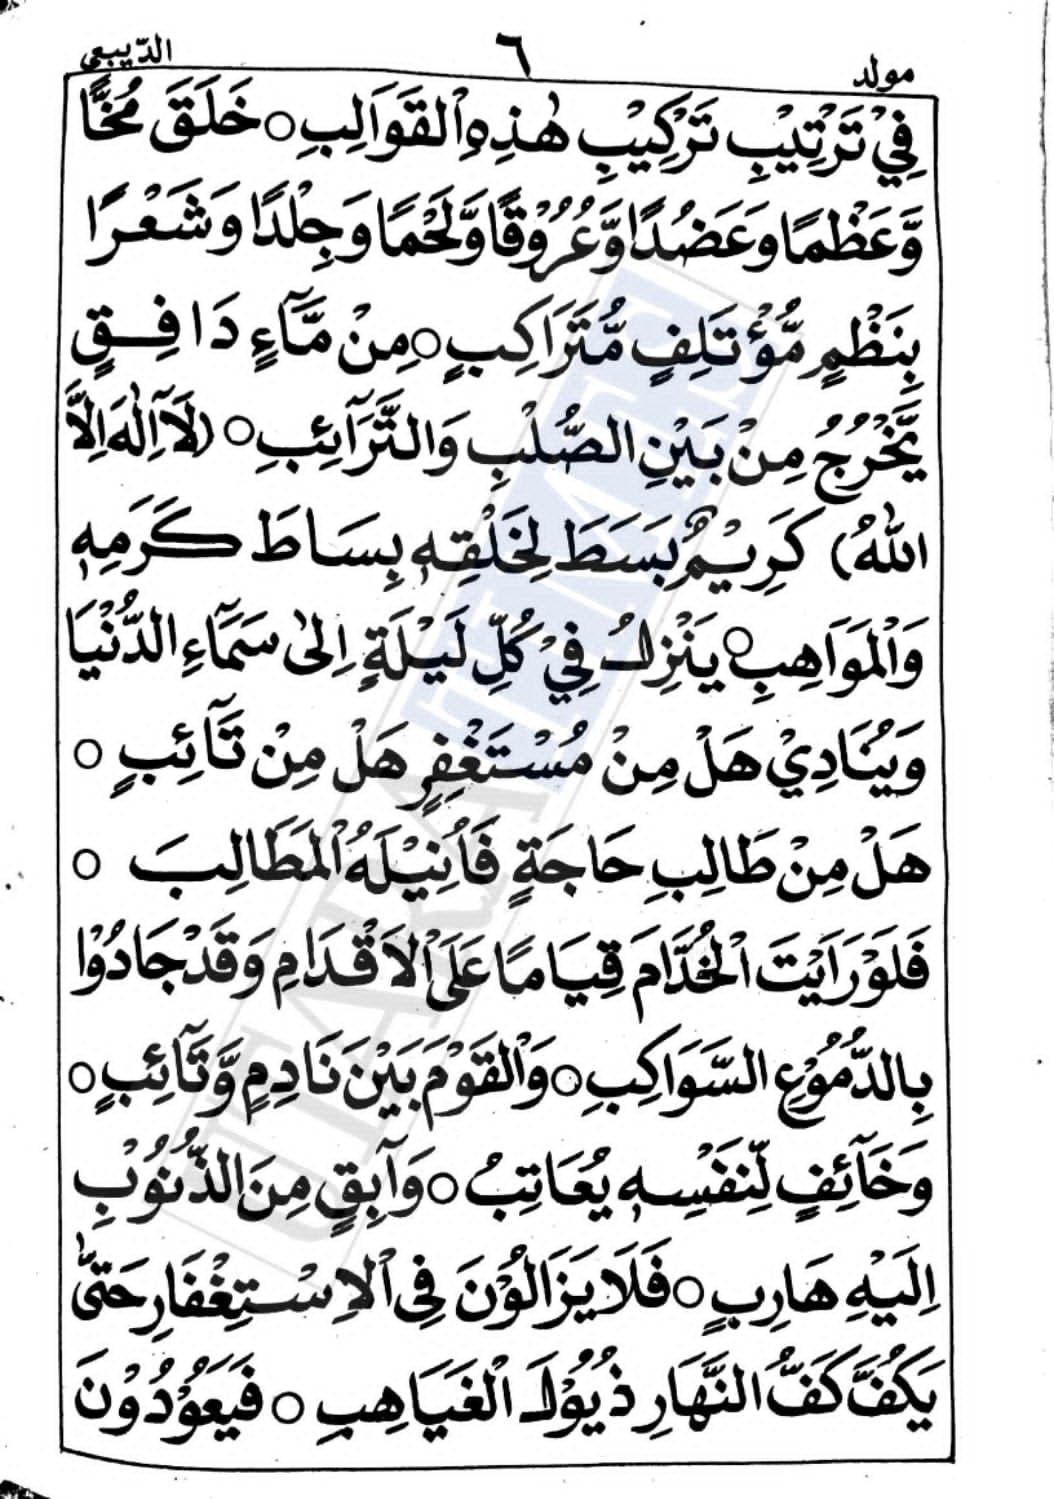 Bacaan Alhamdulillahil Qowiyyil Gholib Lengkap Teks Arab, Berikut Uraiannya. Baca teks utuhnya pada artikel ini.